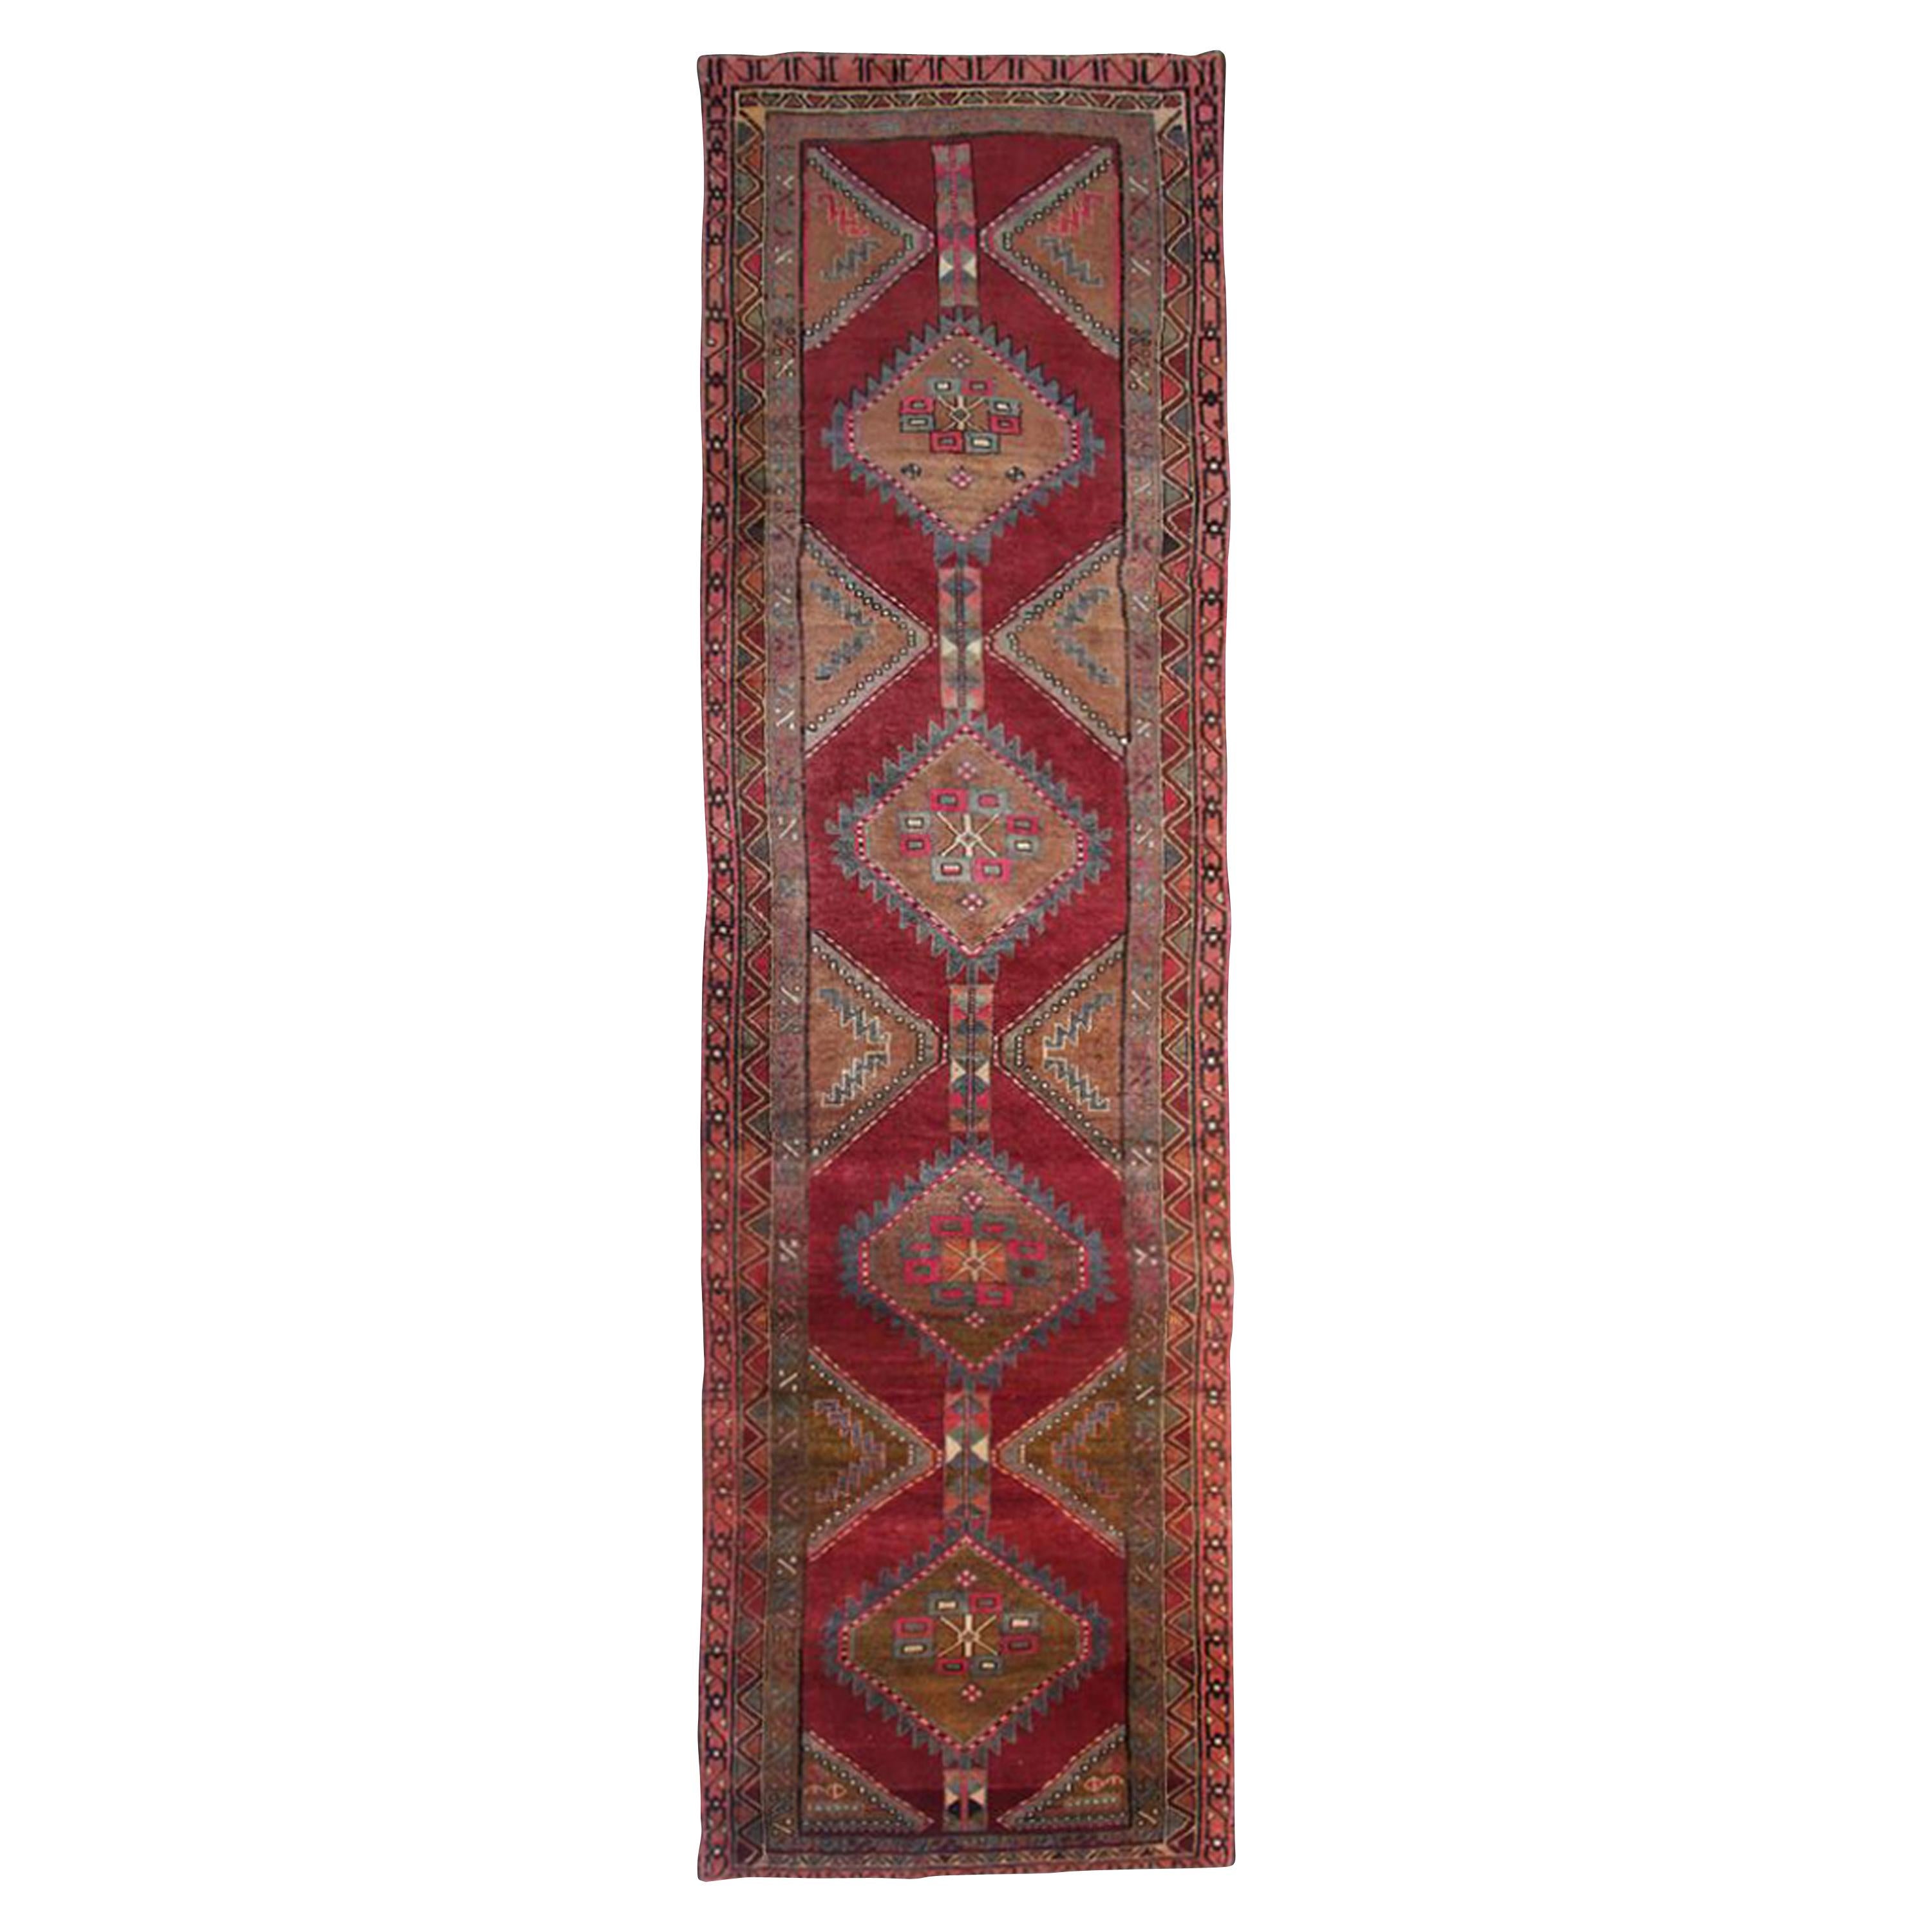 Vintage Red Runner Rug Handmade Oriental Tribal Wool Area Rug CARPET 110x385cm 